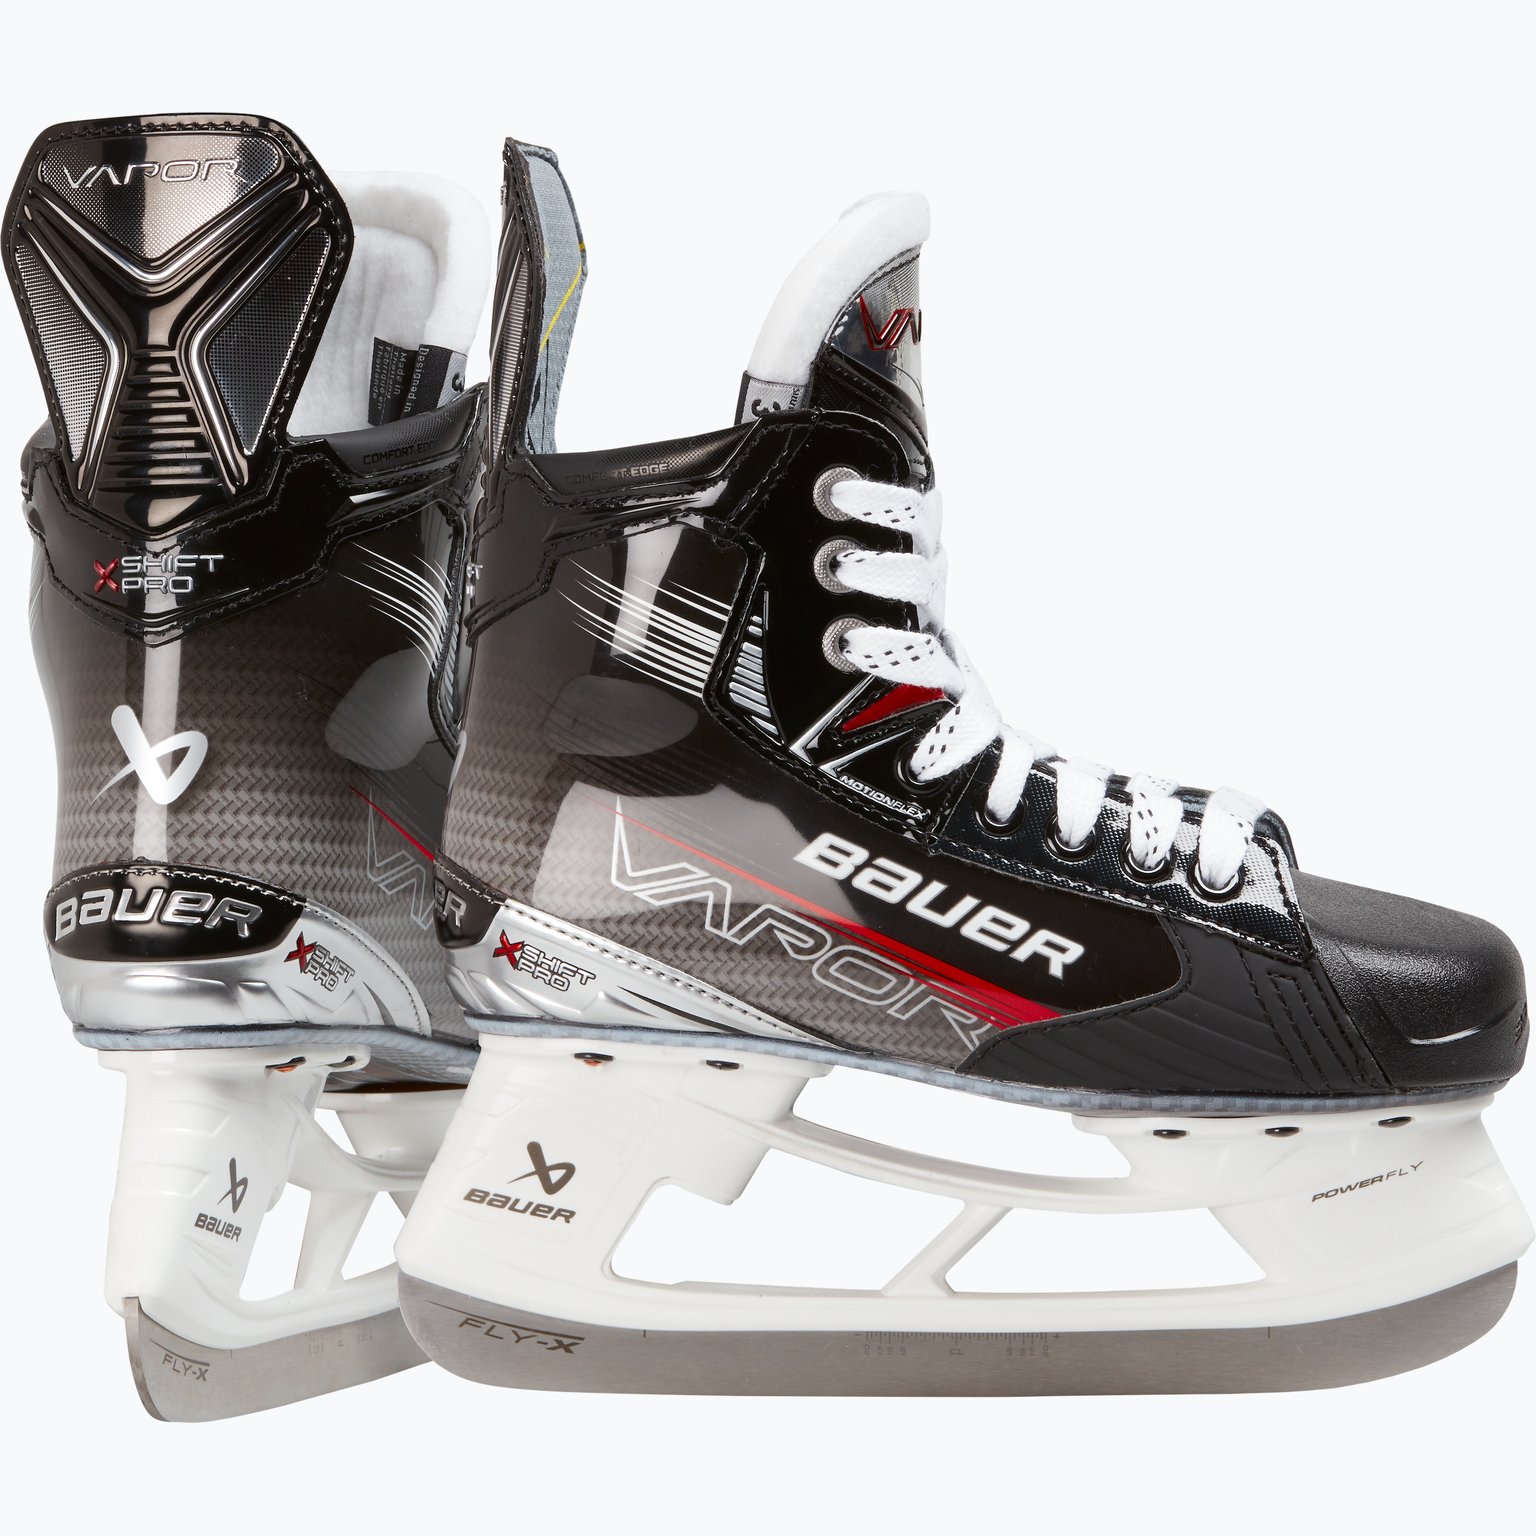 Vapor Shift Pro JR hockeyskridskor